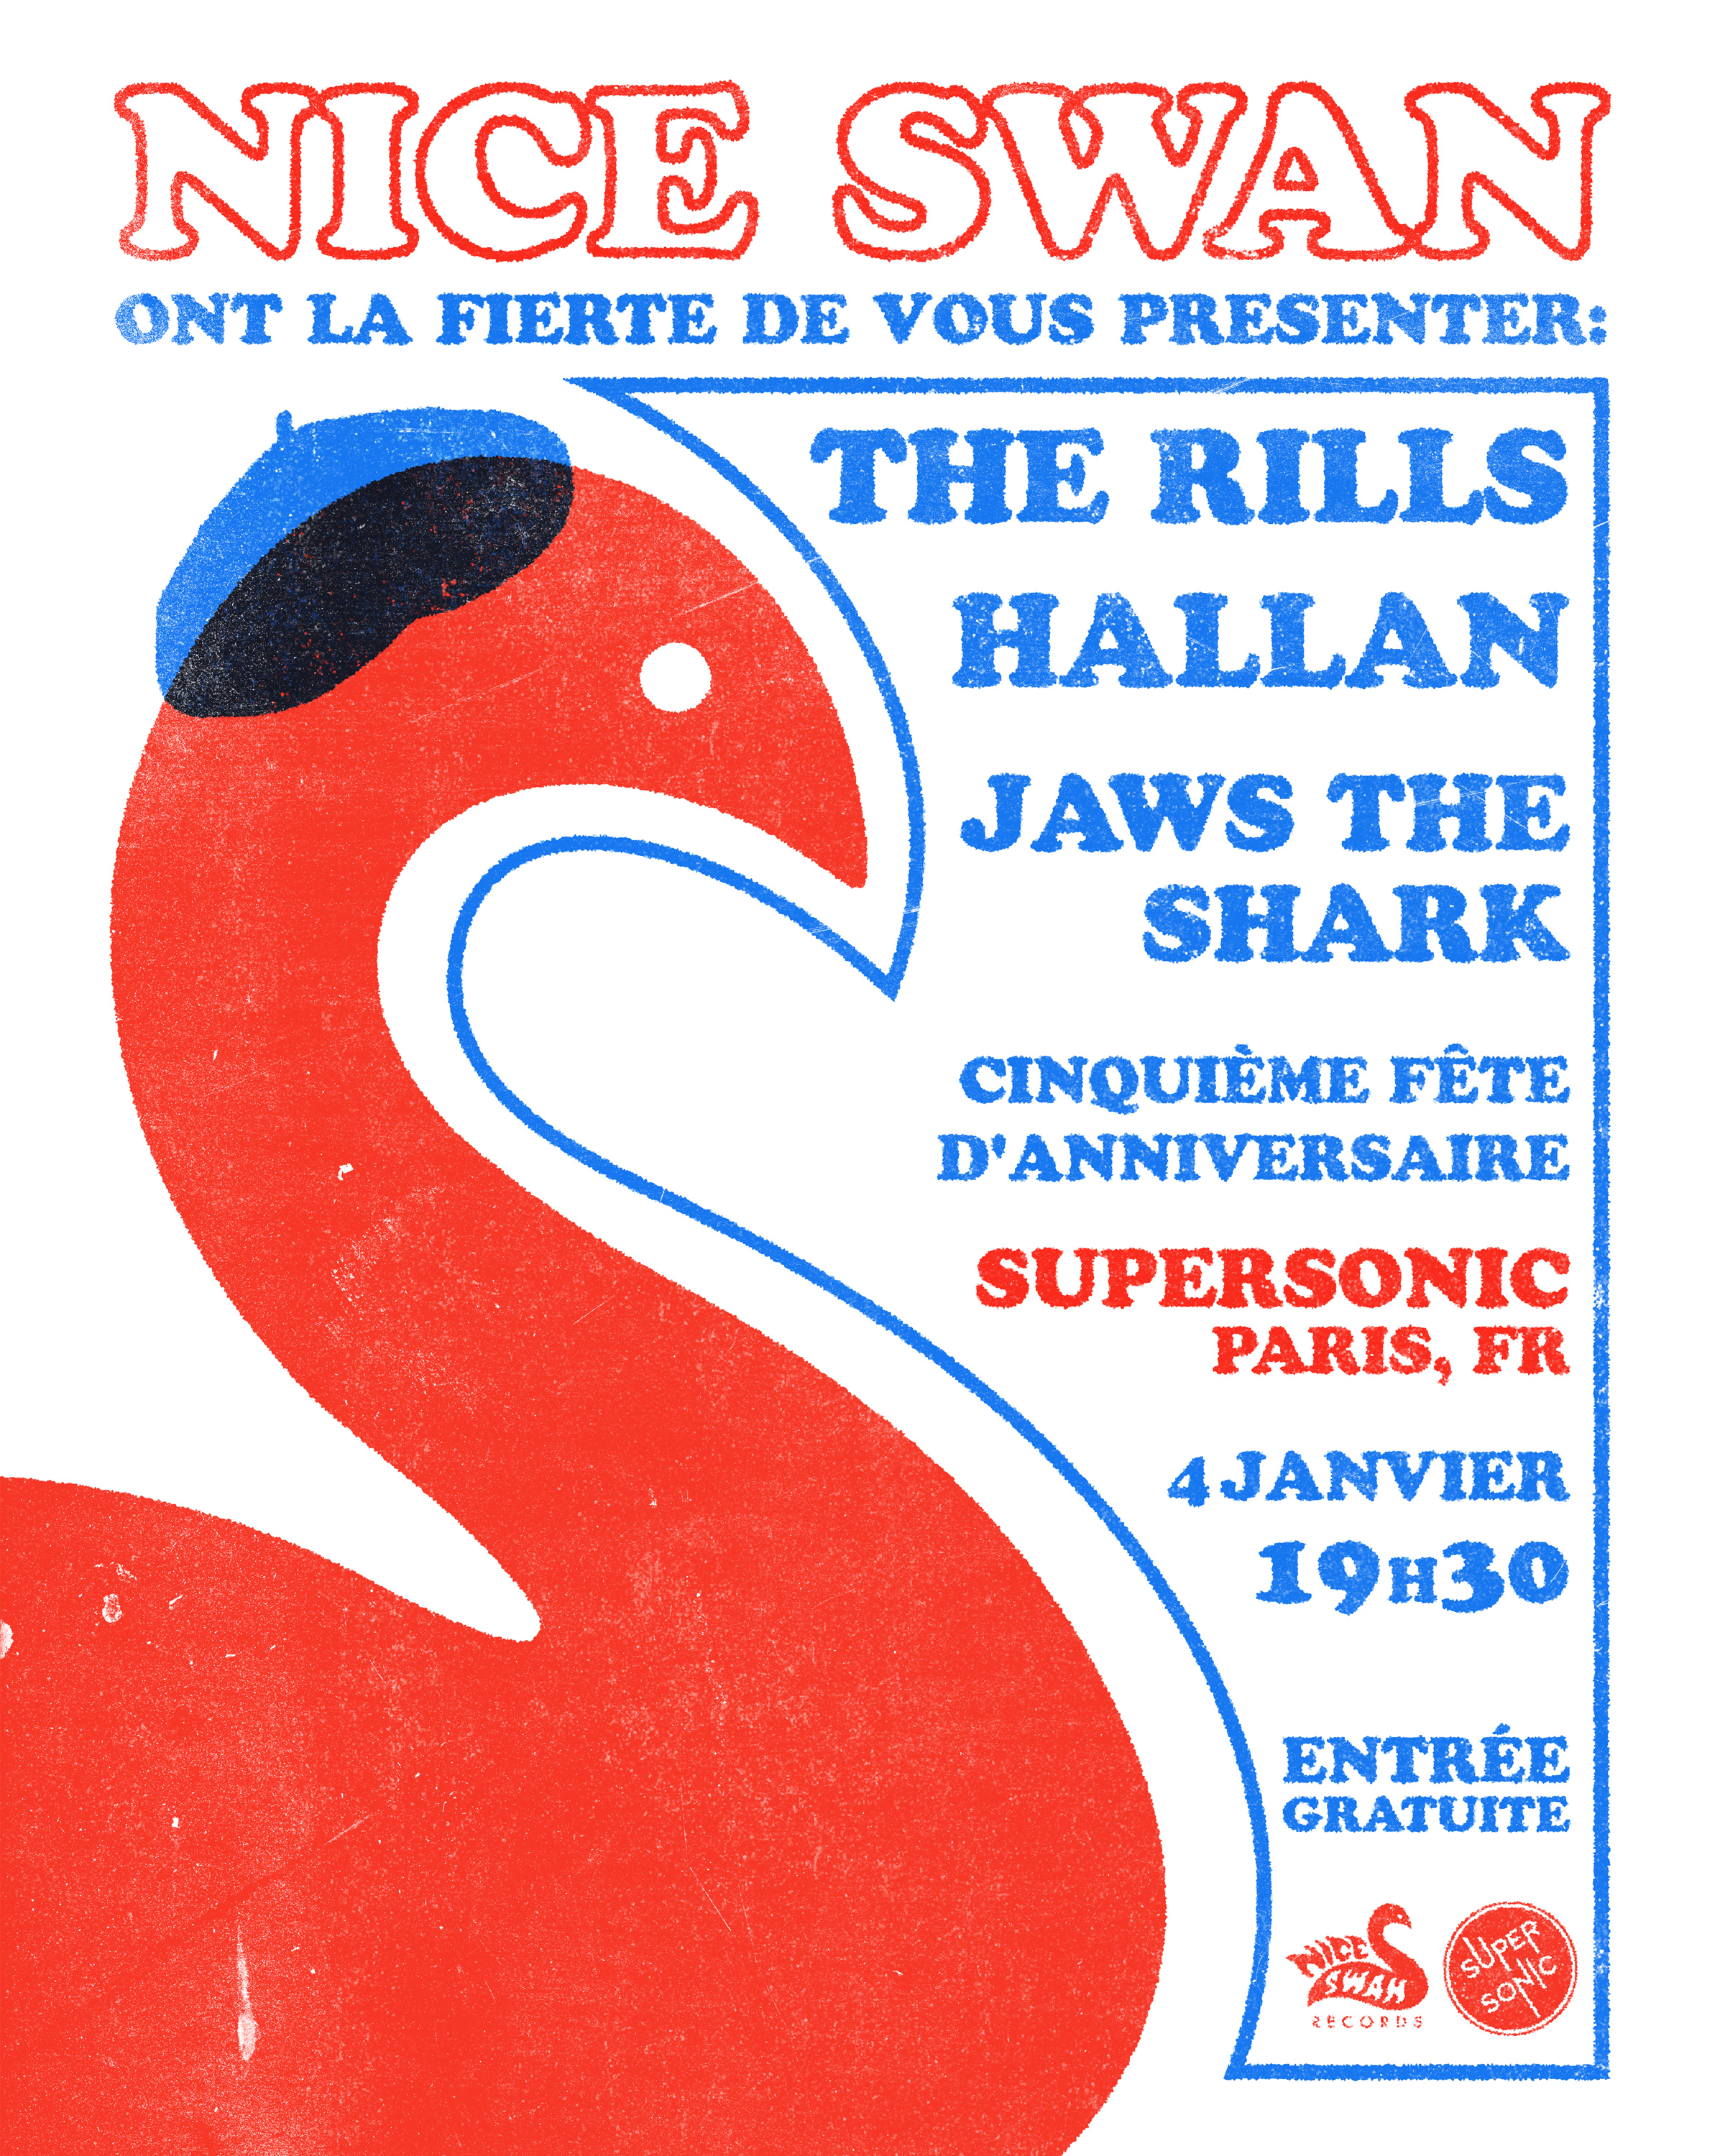 Bientôt En Concert Chez Nous – Soirée Nice Swan Records –  Paris, Le Supersonic